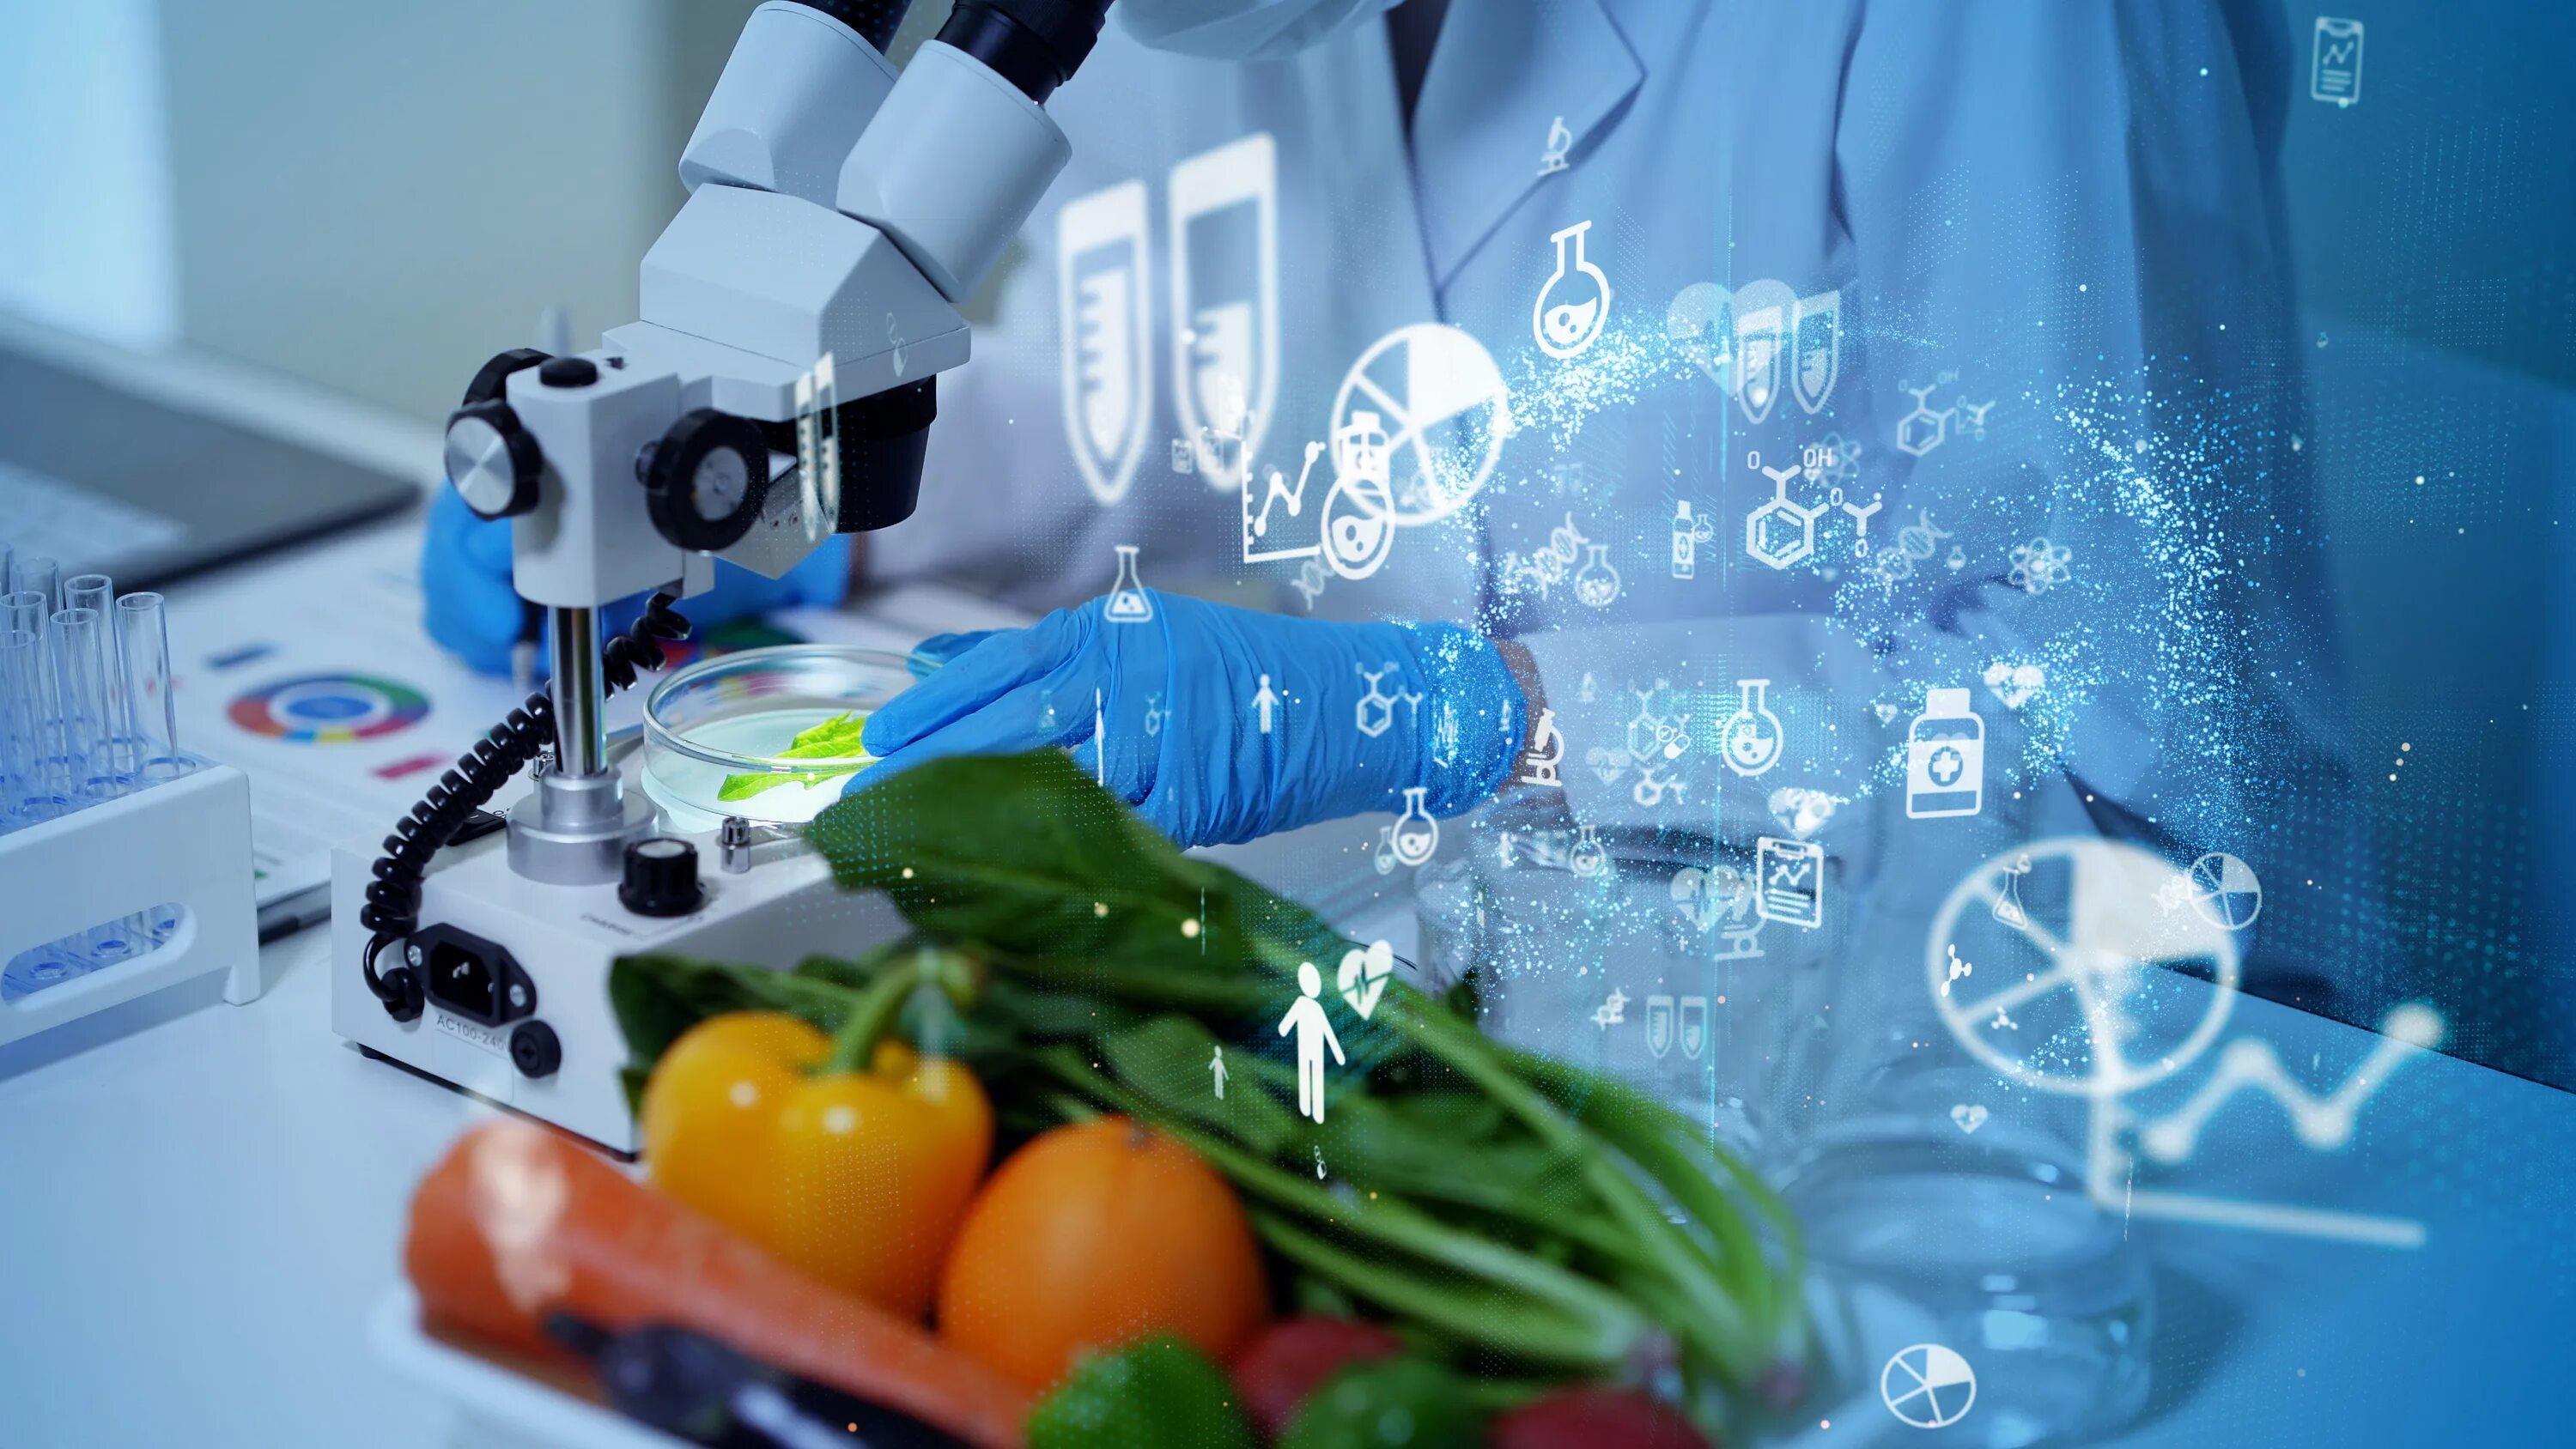 Биотехнология пищевых продуктов. Биотехнологии в промышленности. Биотехнологии в пищевой промышленности. Нанотехнологии в пищевой промышленности. Технологии свежести